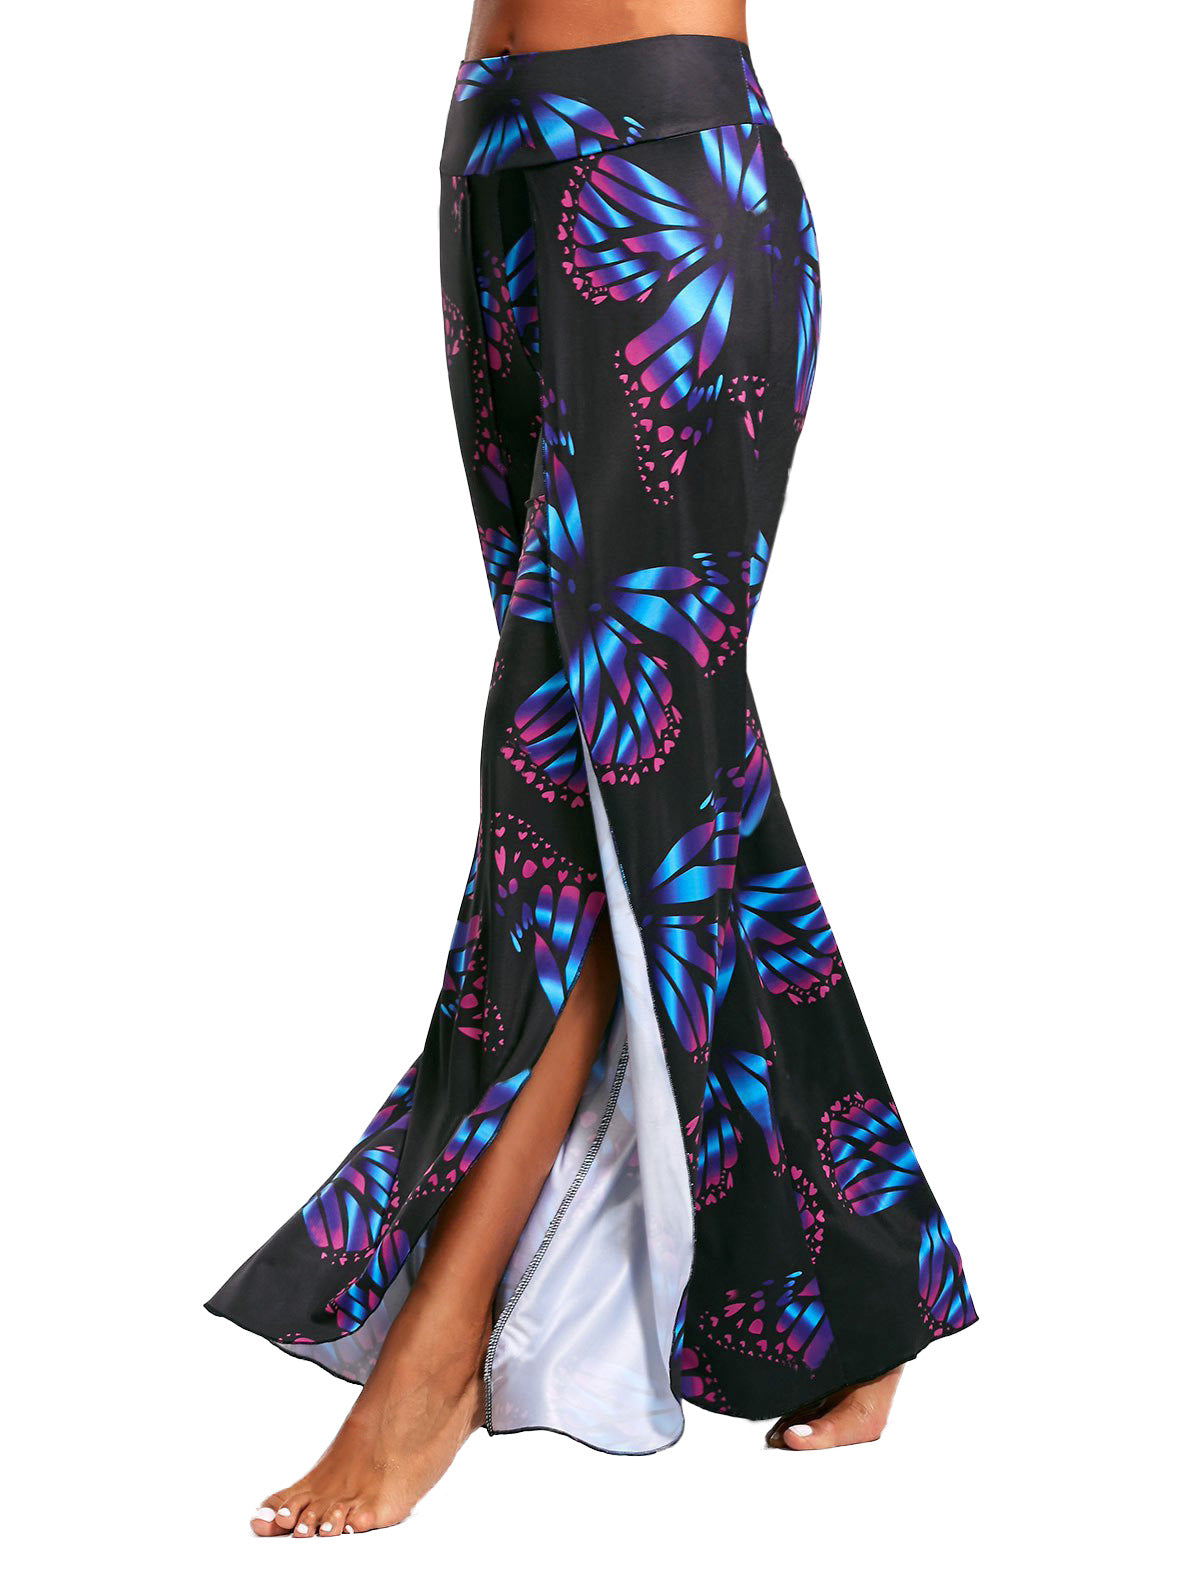 Floral Print Middle Waist Long Split Wide-legs Yoga Pants